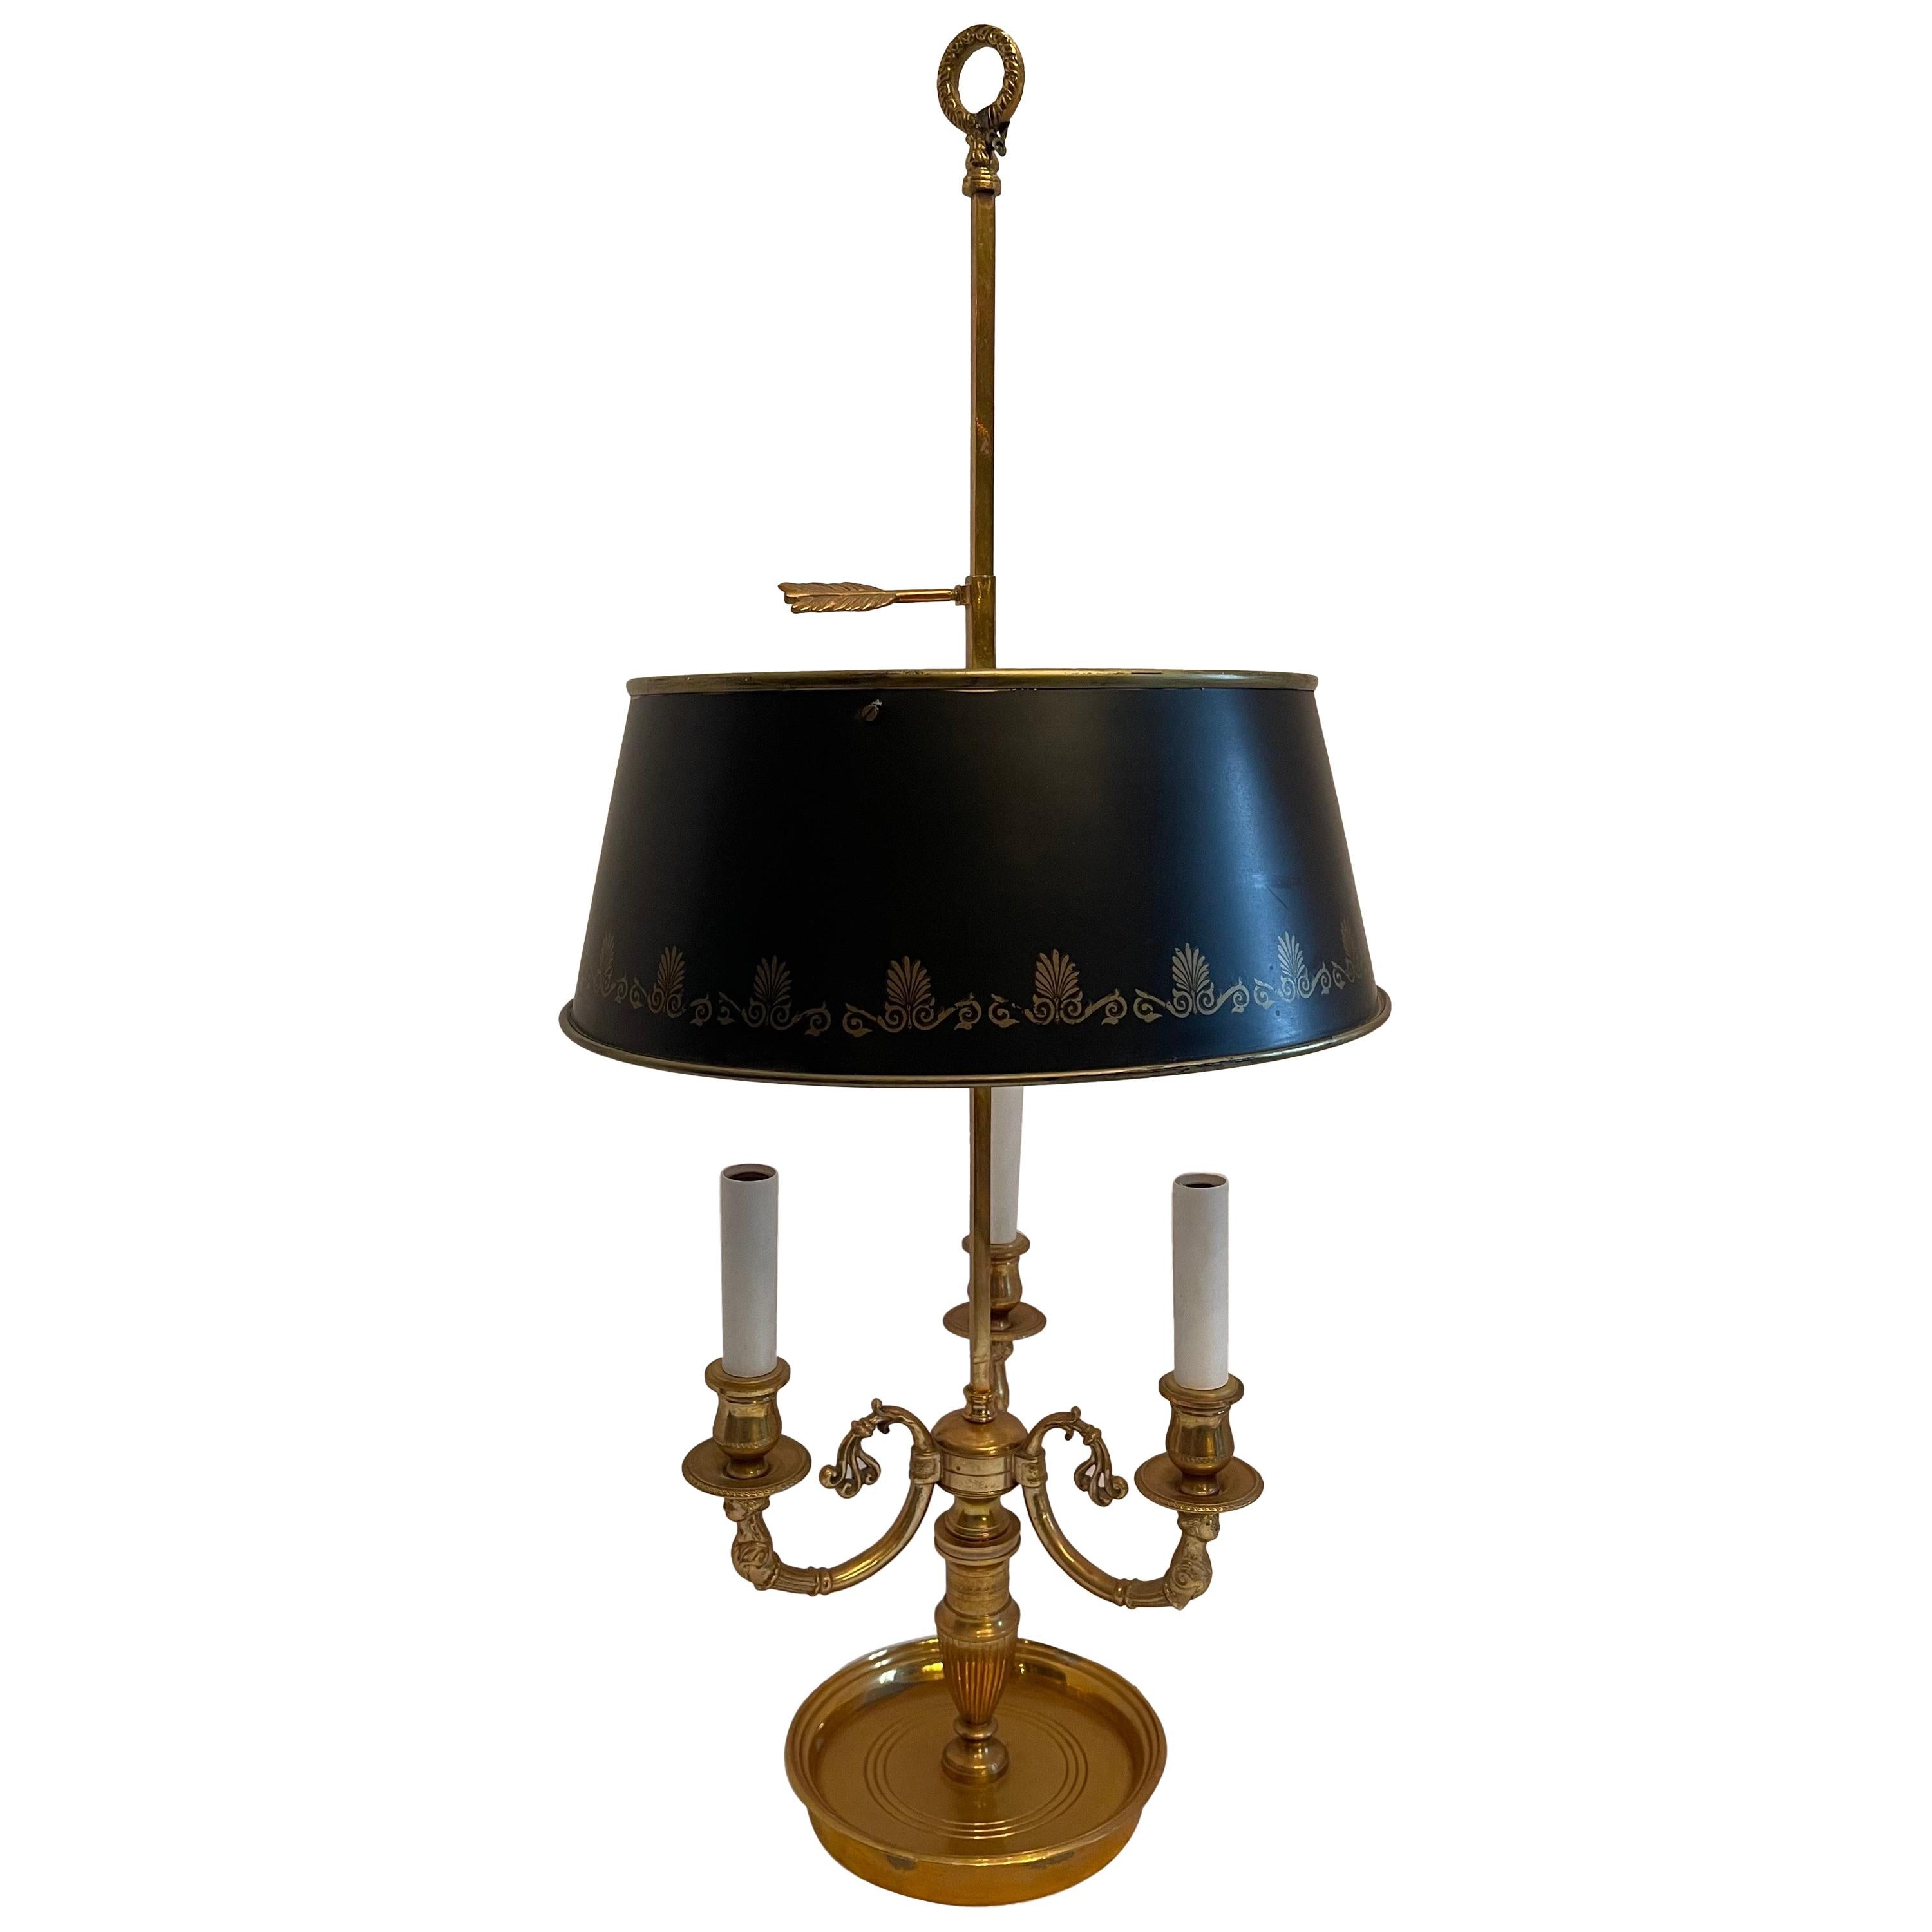 Lampe bouillotte en bronze de style Empire français néoclassique avec trois candélabres et abat-jour en tôle